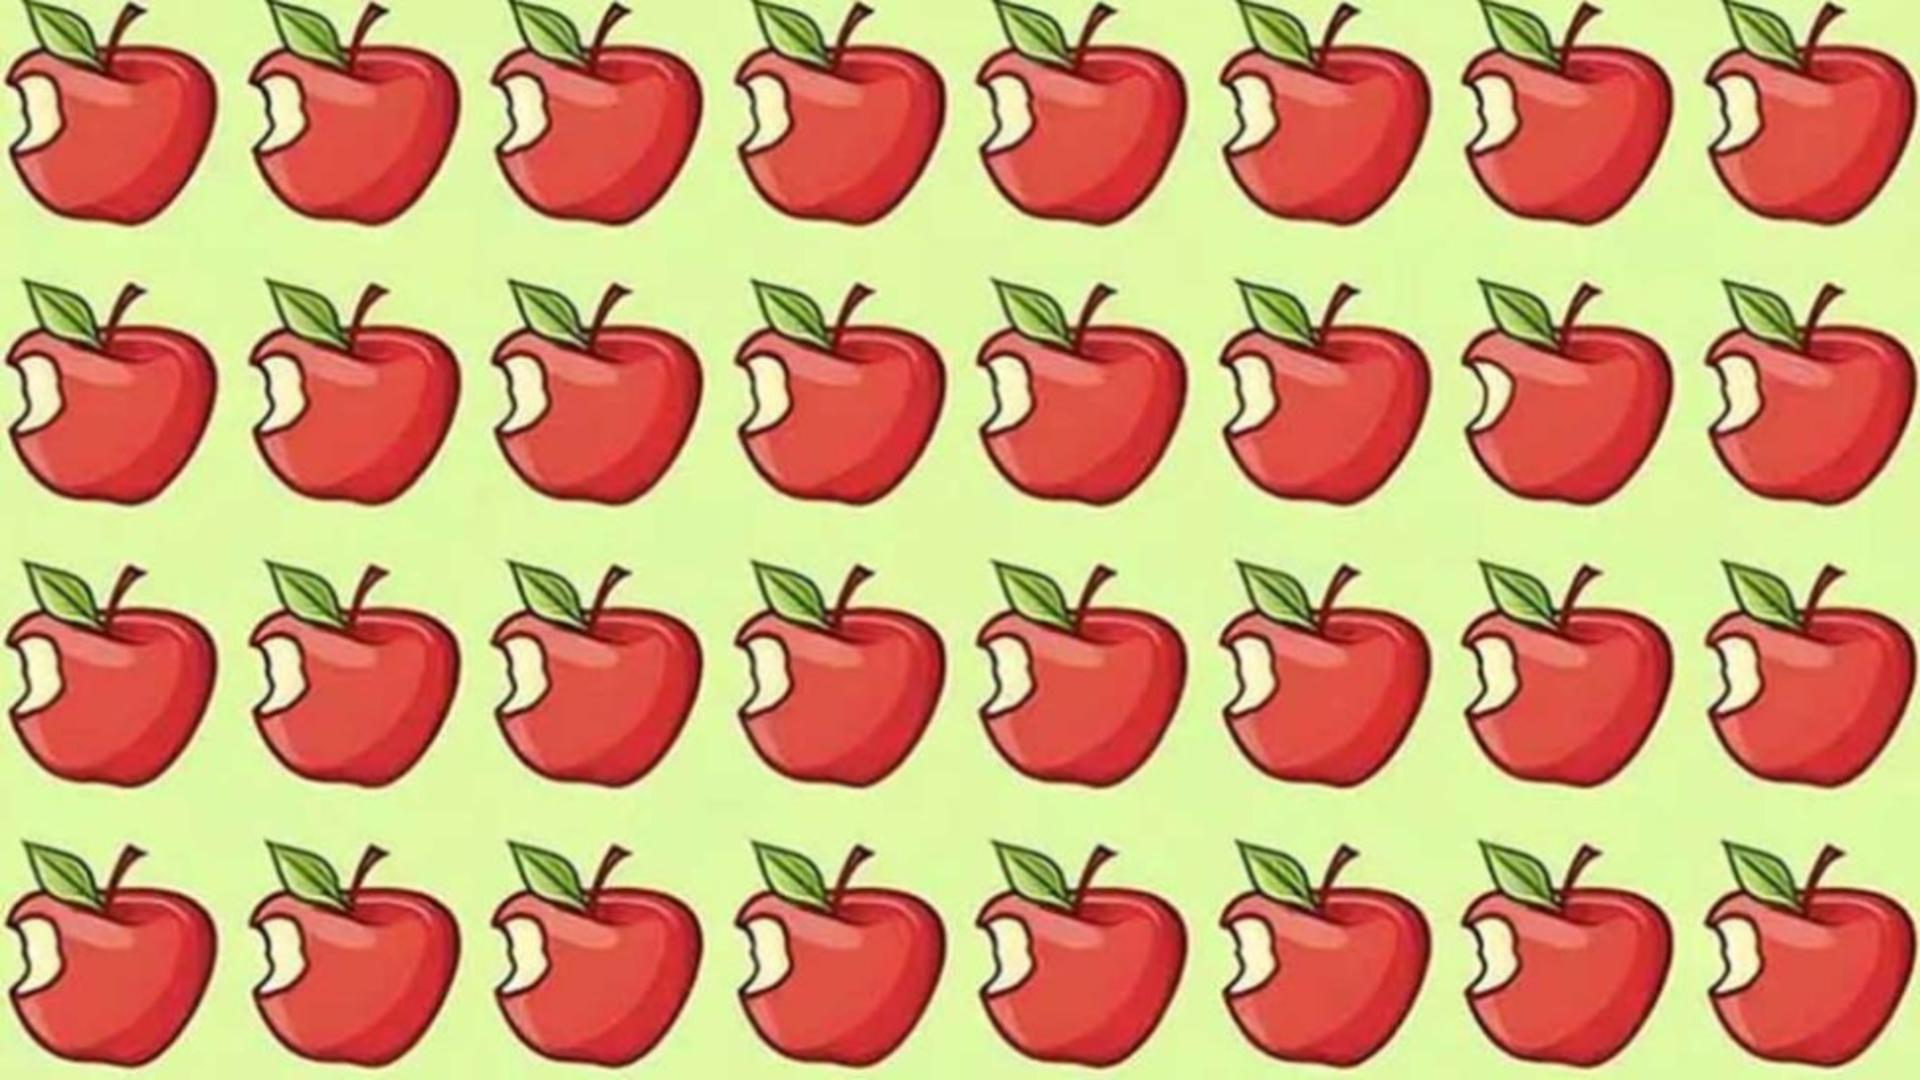 Poți să găsești mărul diferit din această imagine în doar 30 de secunde? Doar 10% din oameni reușesc să rezolve testul